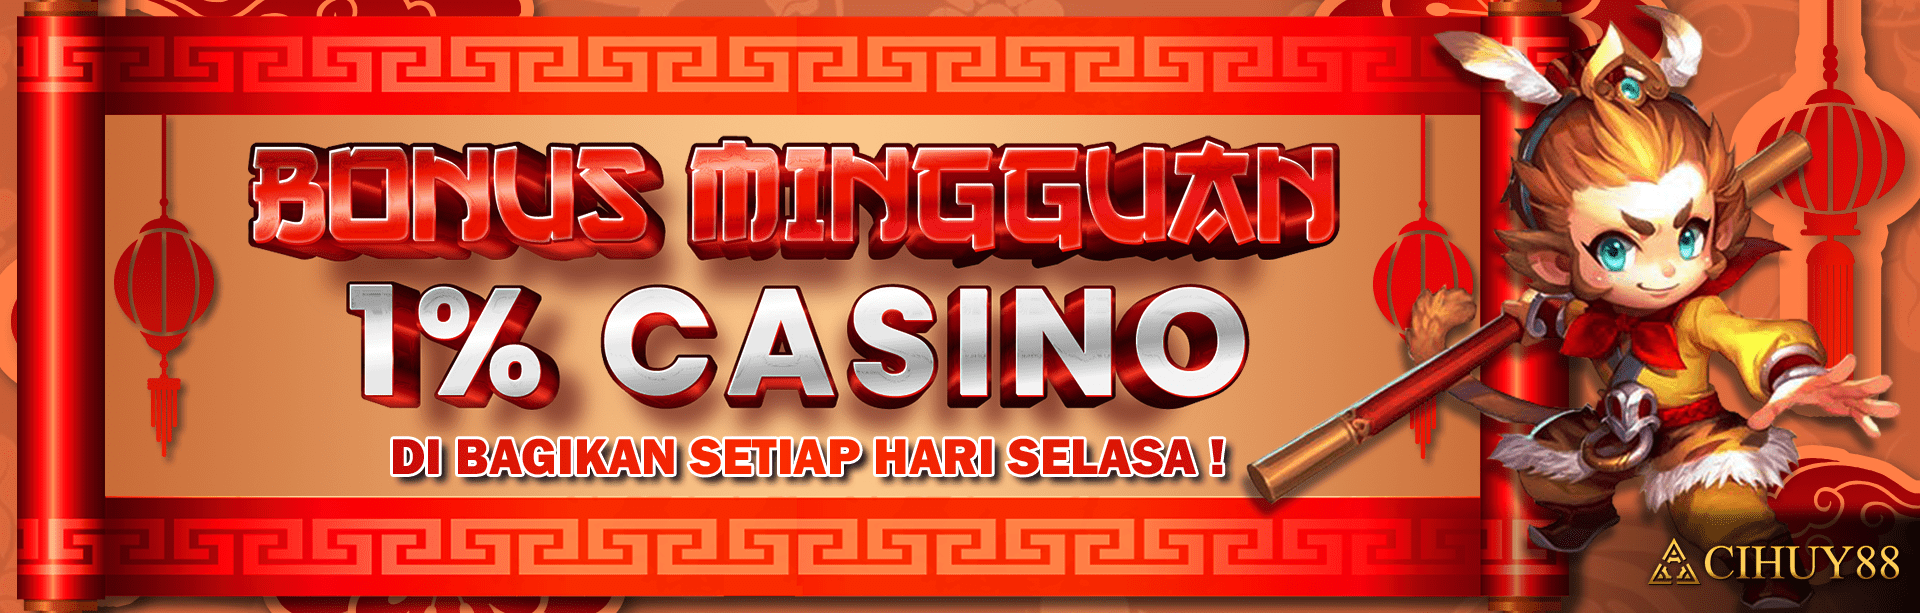 Bonus Mingguan Casino 1%